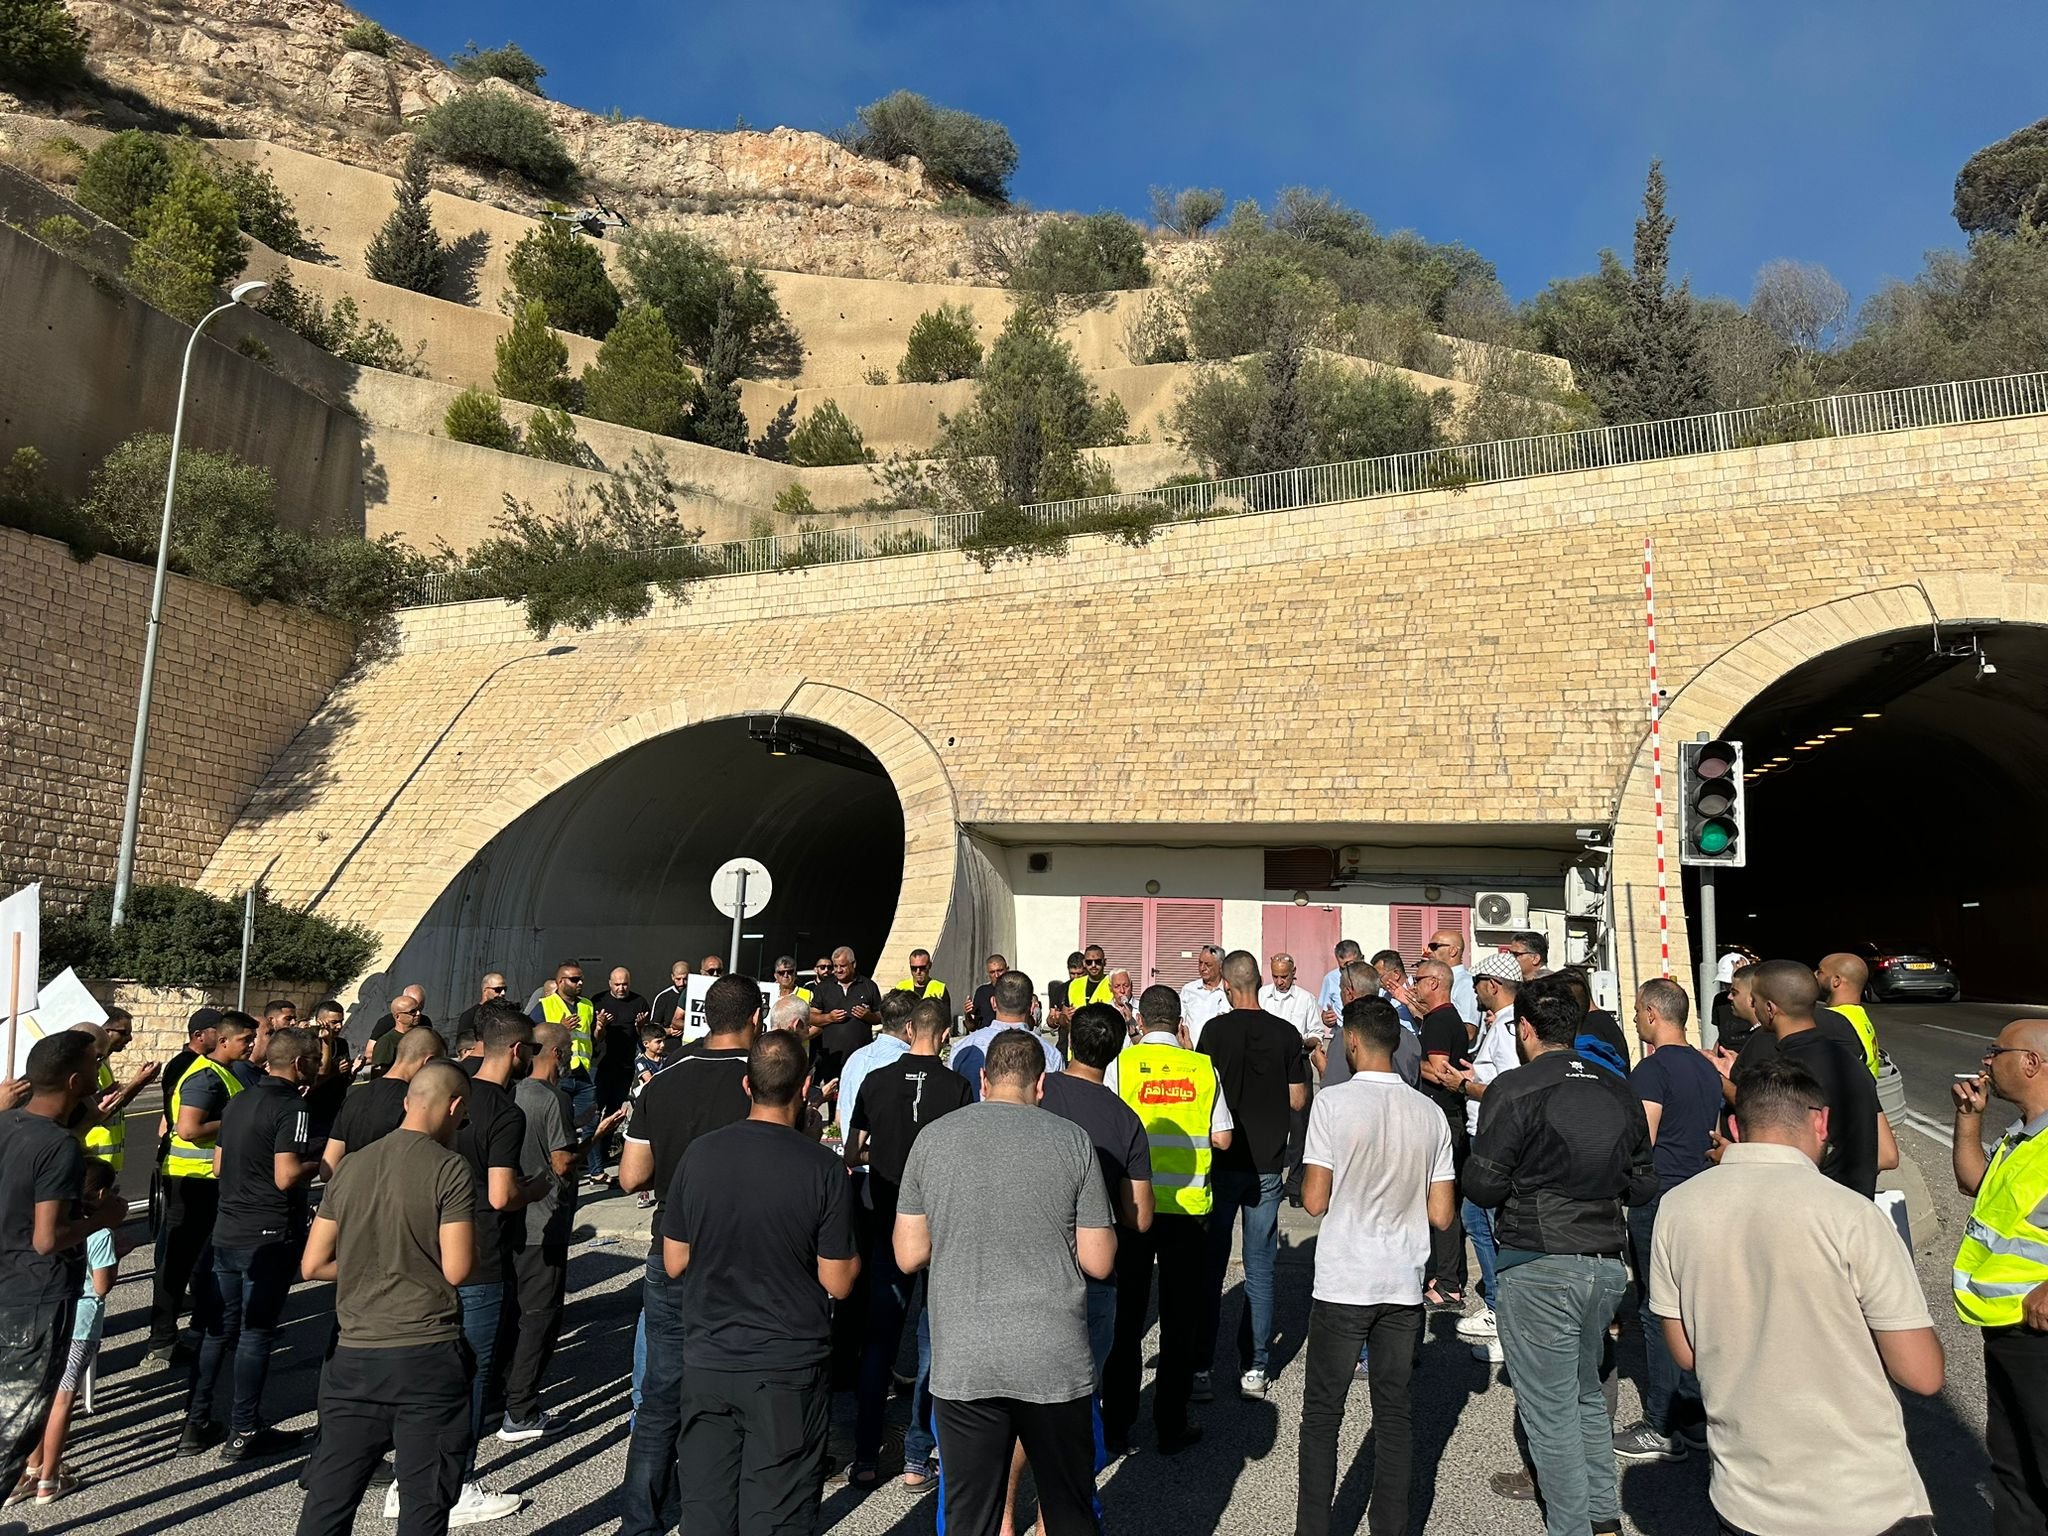 رئيس مجلس اكسال في مسيرة اغلاق نفق الناصرة: اكسال موحدة في مواجهة العنف والجريمة-4